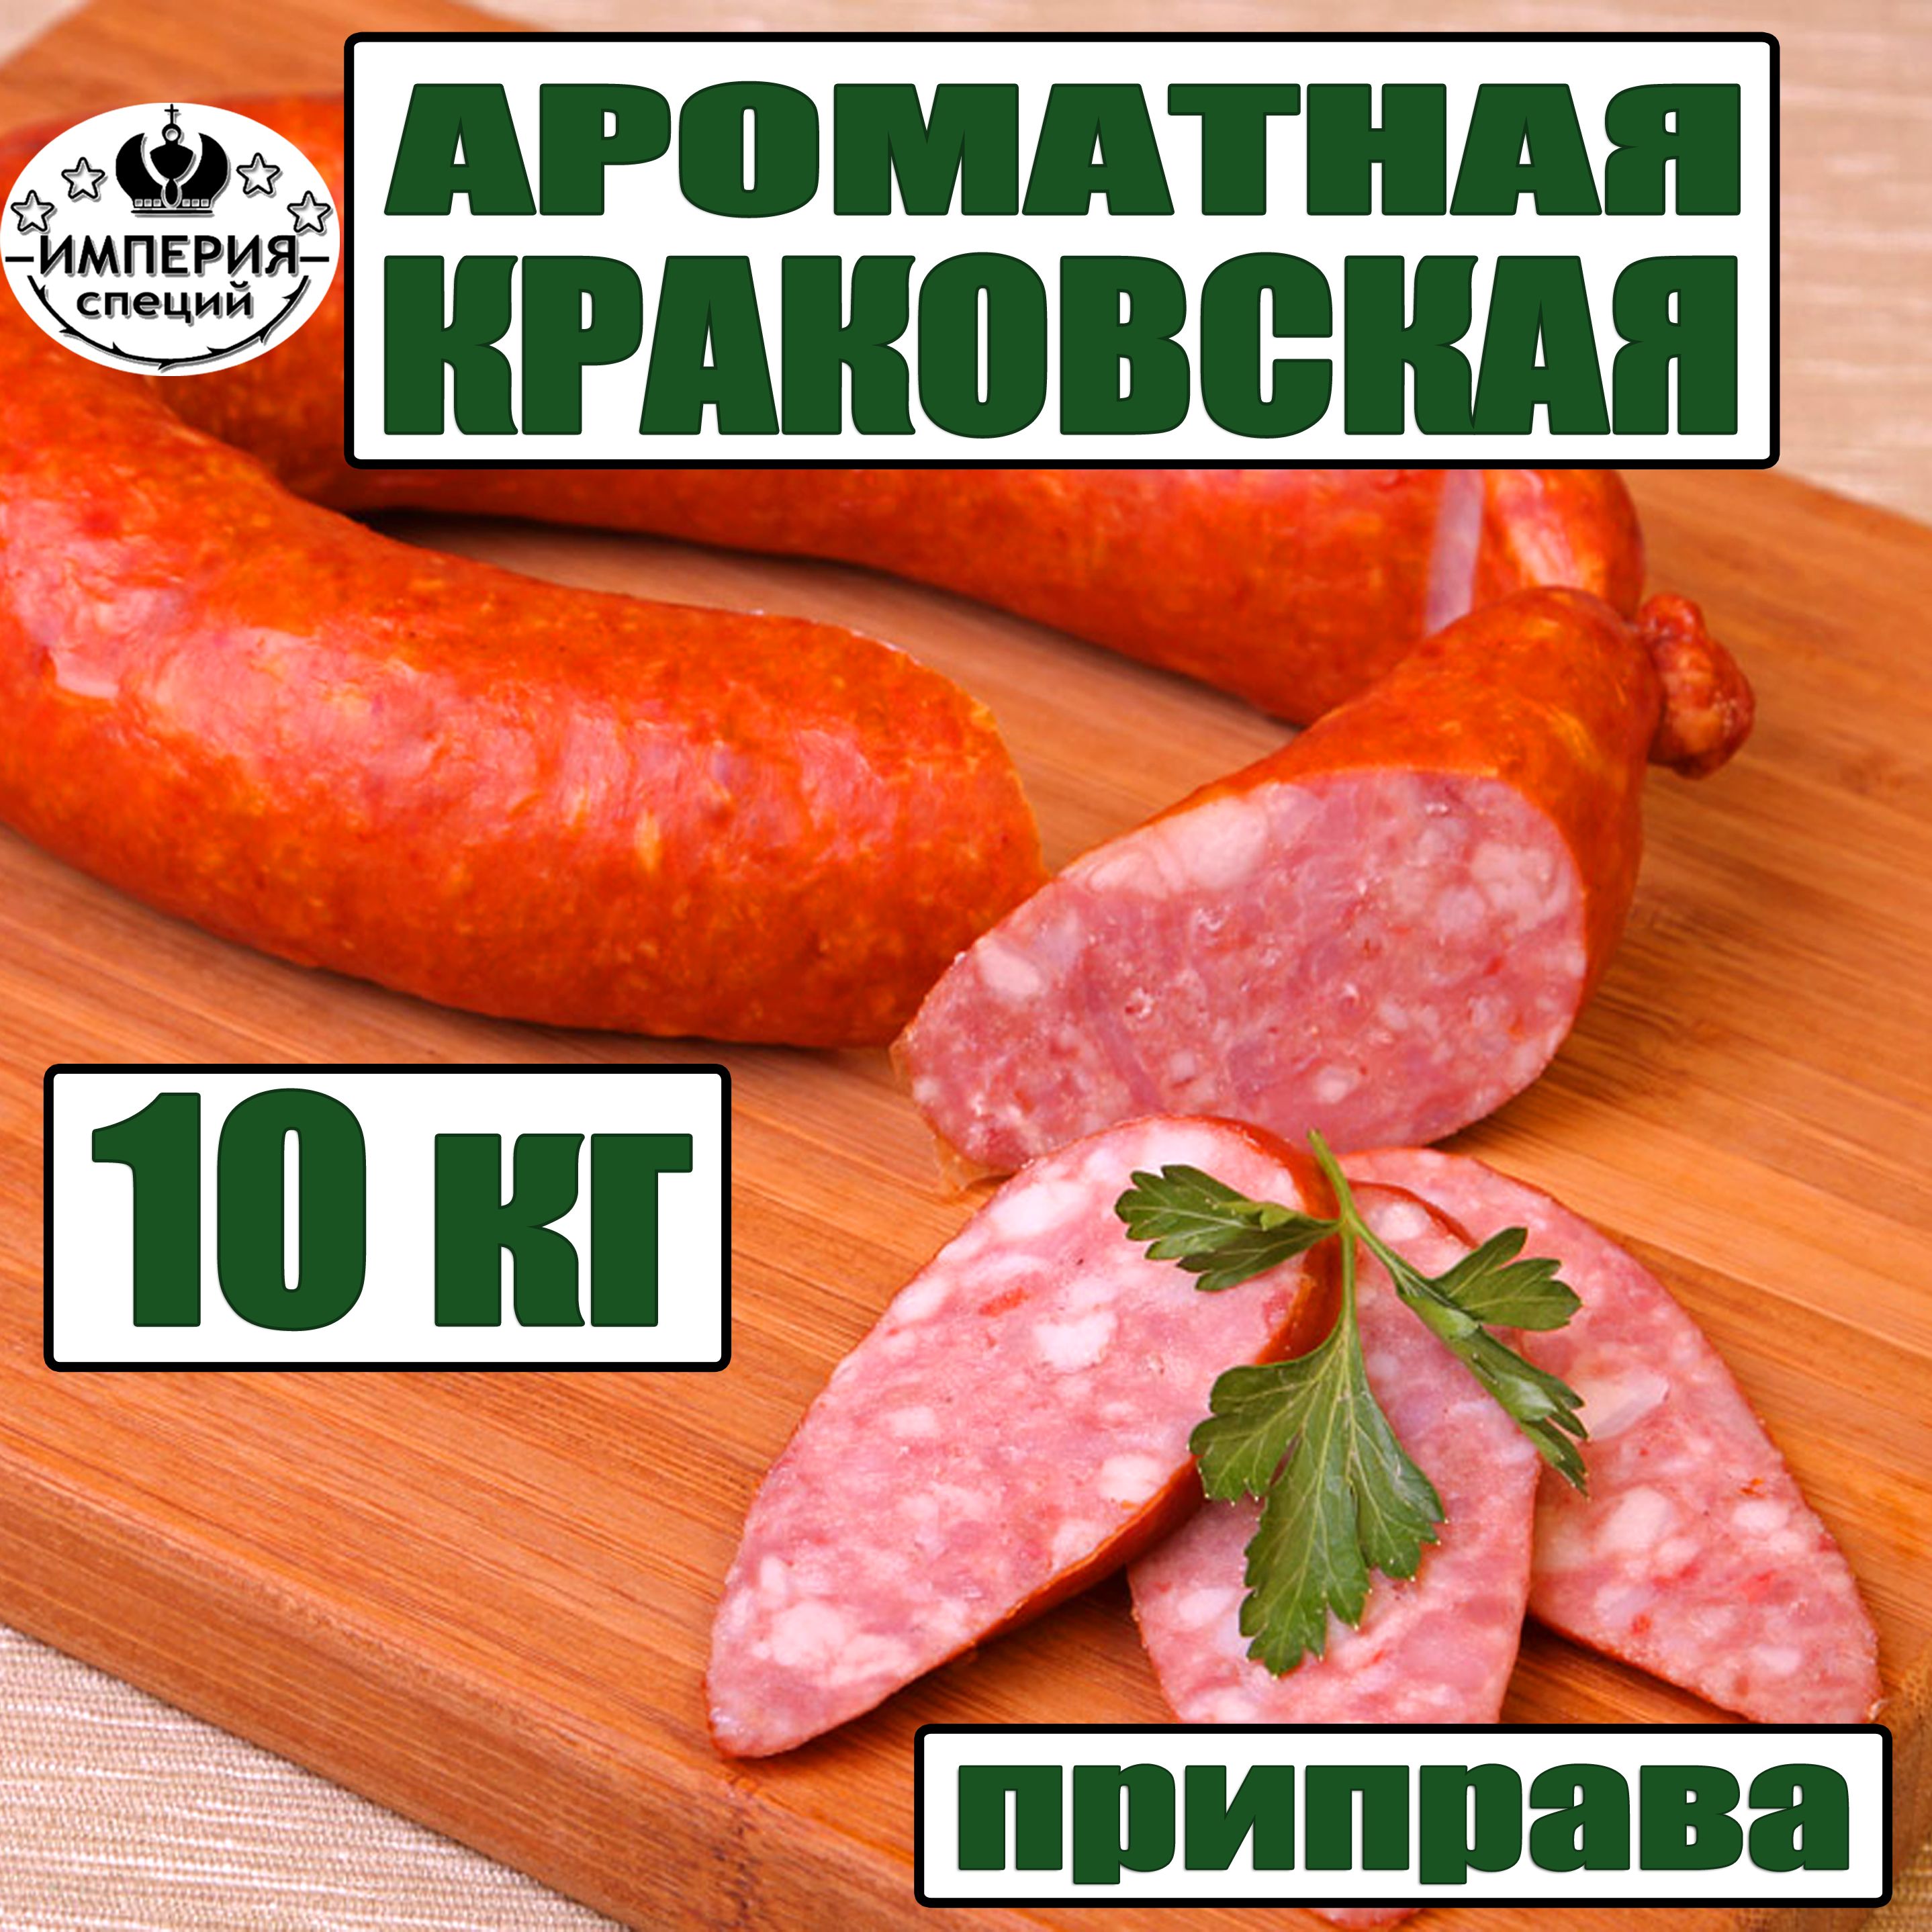 Приправа 10 кг для краковской колбасы ароматная